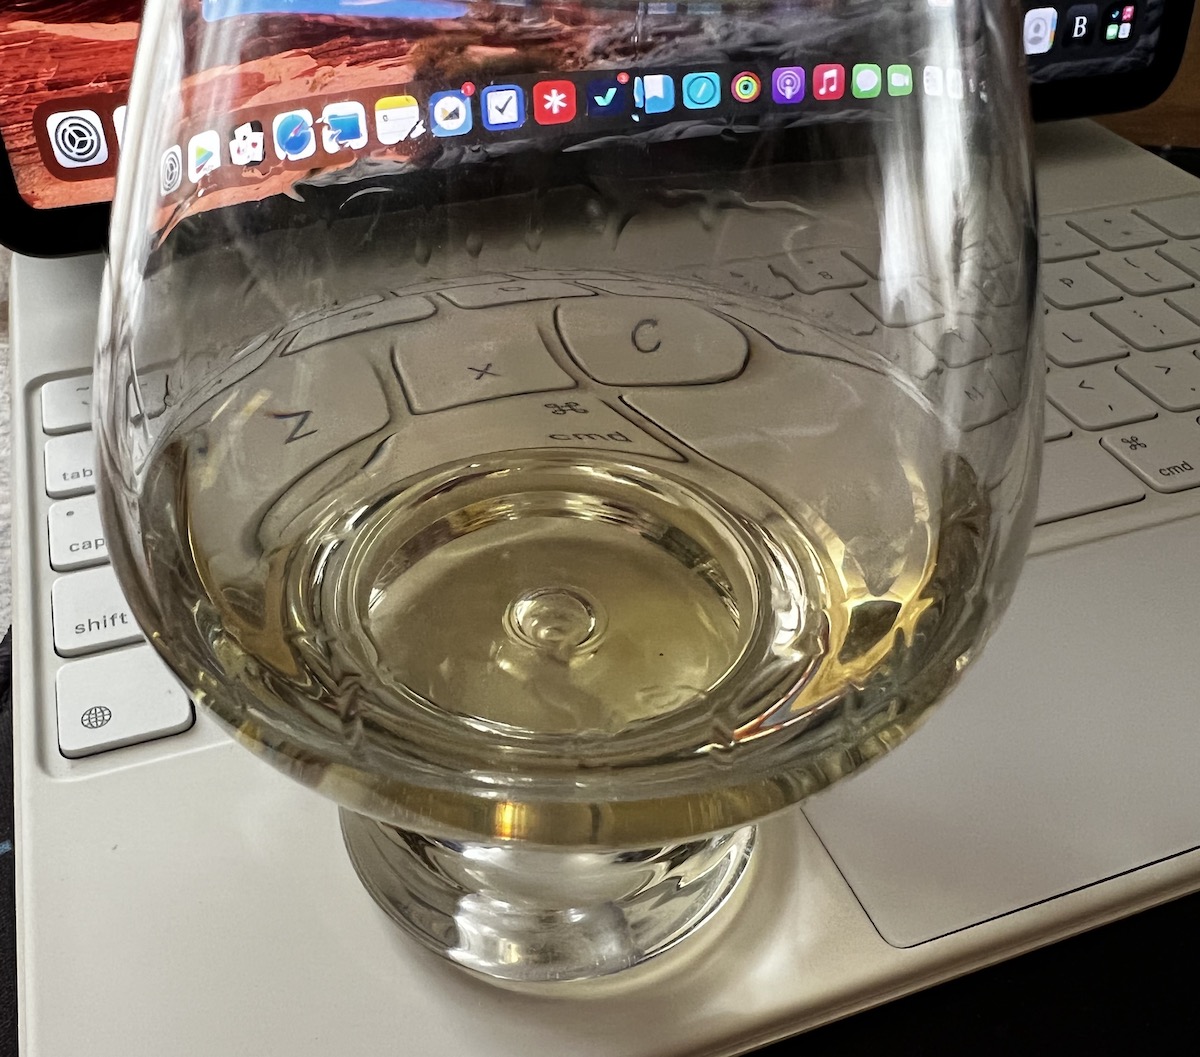 Glass of divine single malt whisky.